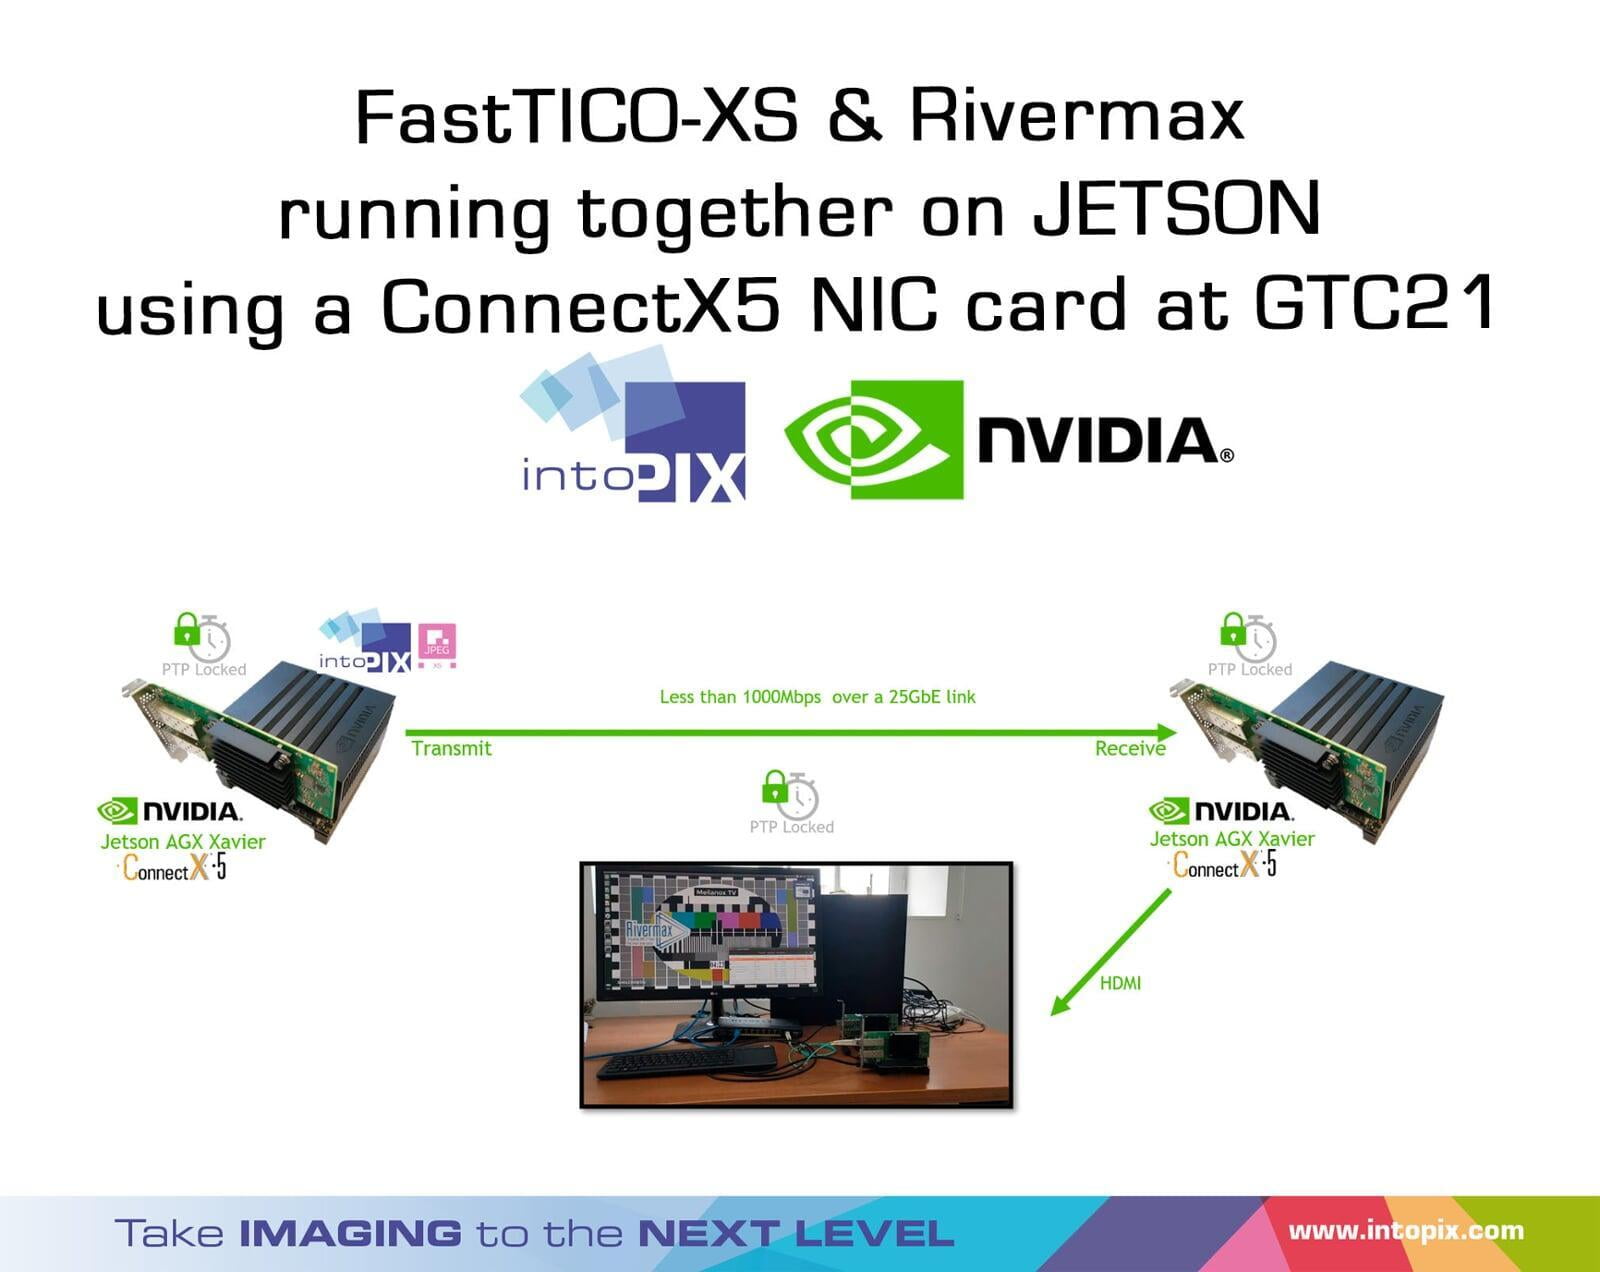 FastTicoXS et Rivermax fonctionnent ensemble sur JETSON en utilisant une carte NIC ConnectX5 à la GTC21.